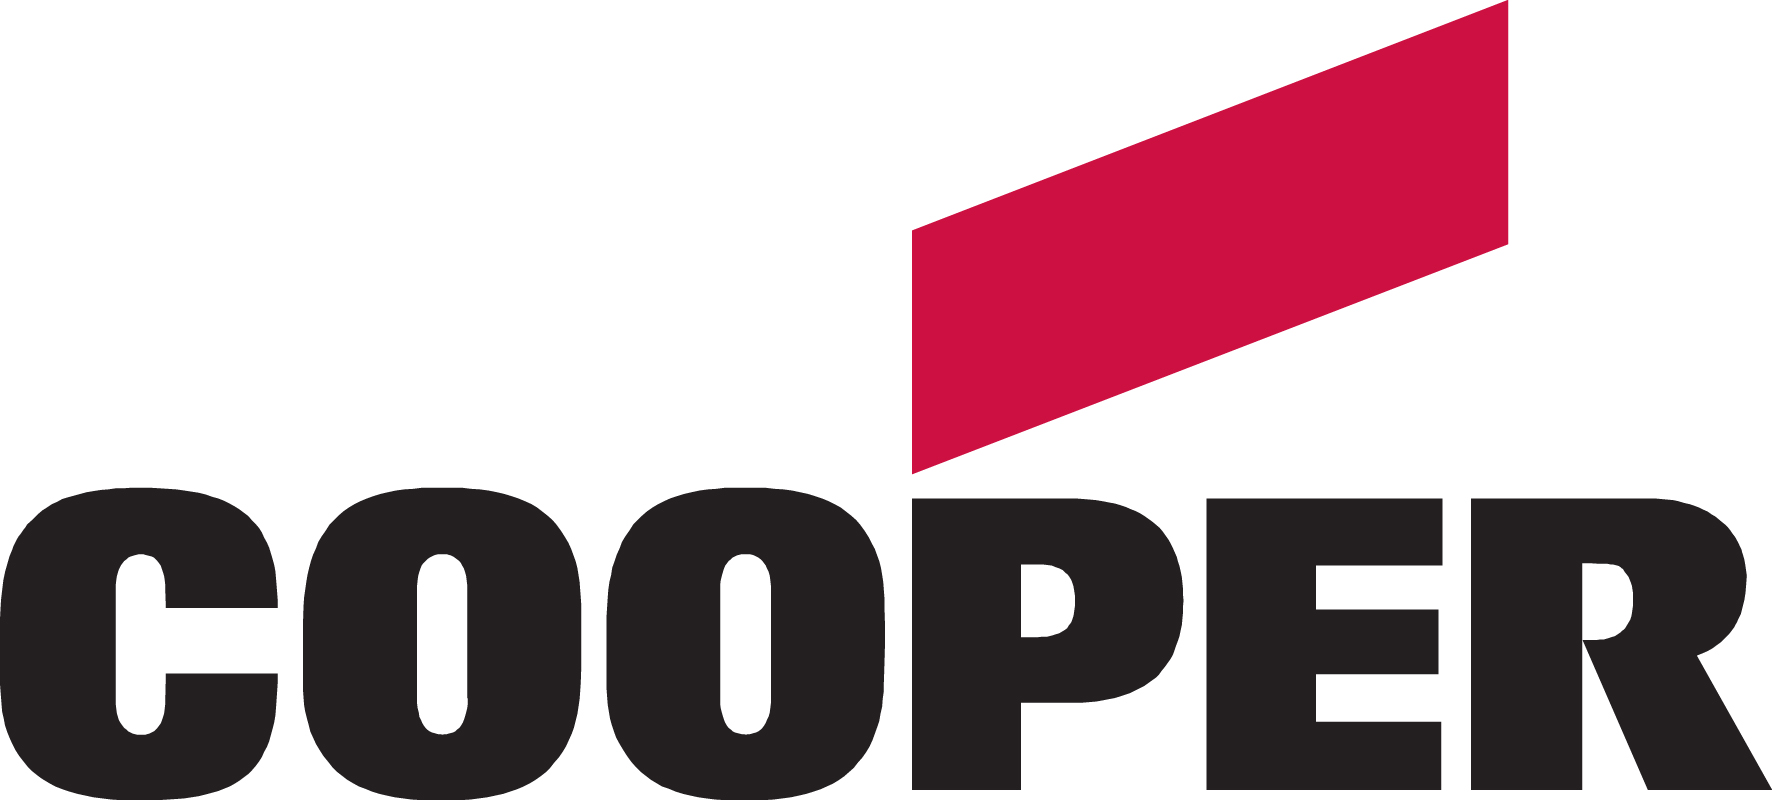 Cooper Industries logo